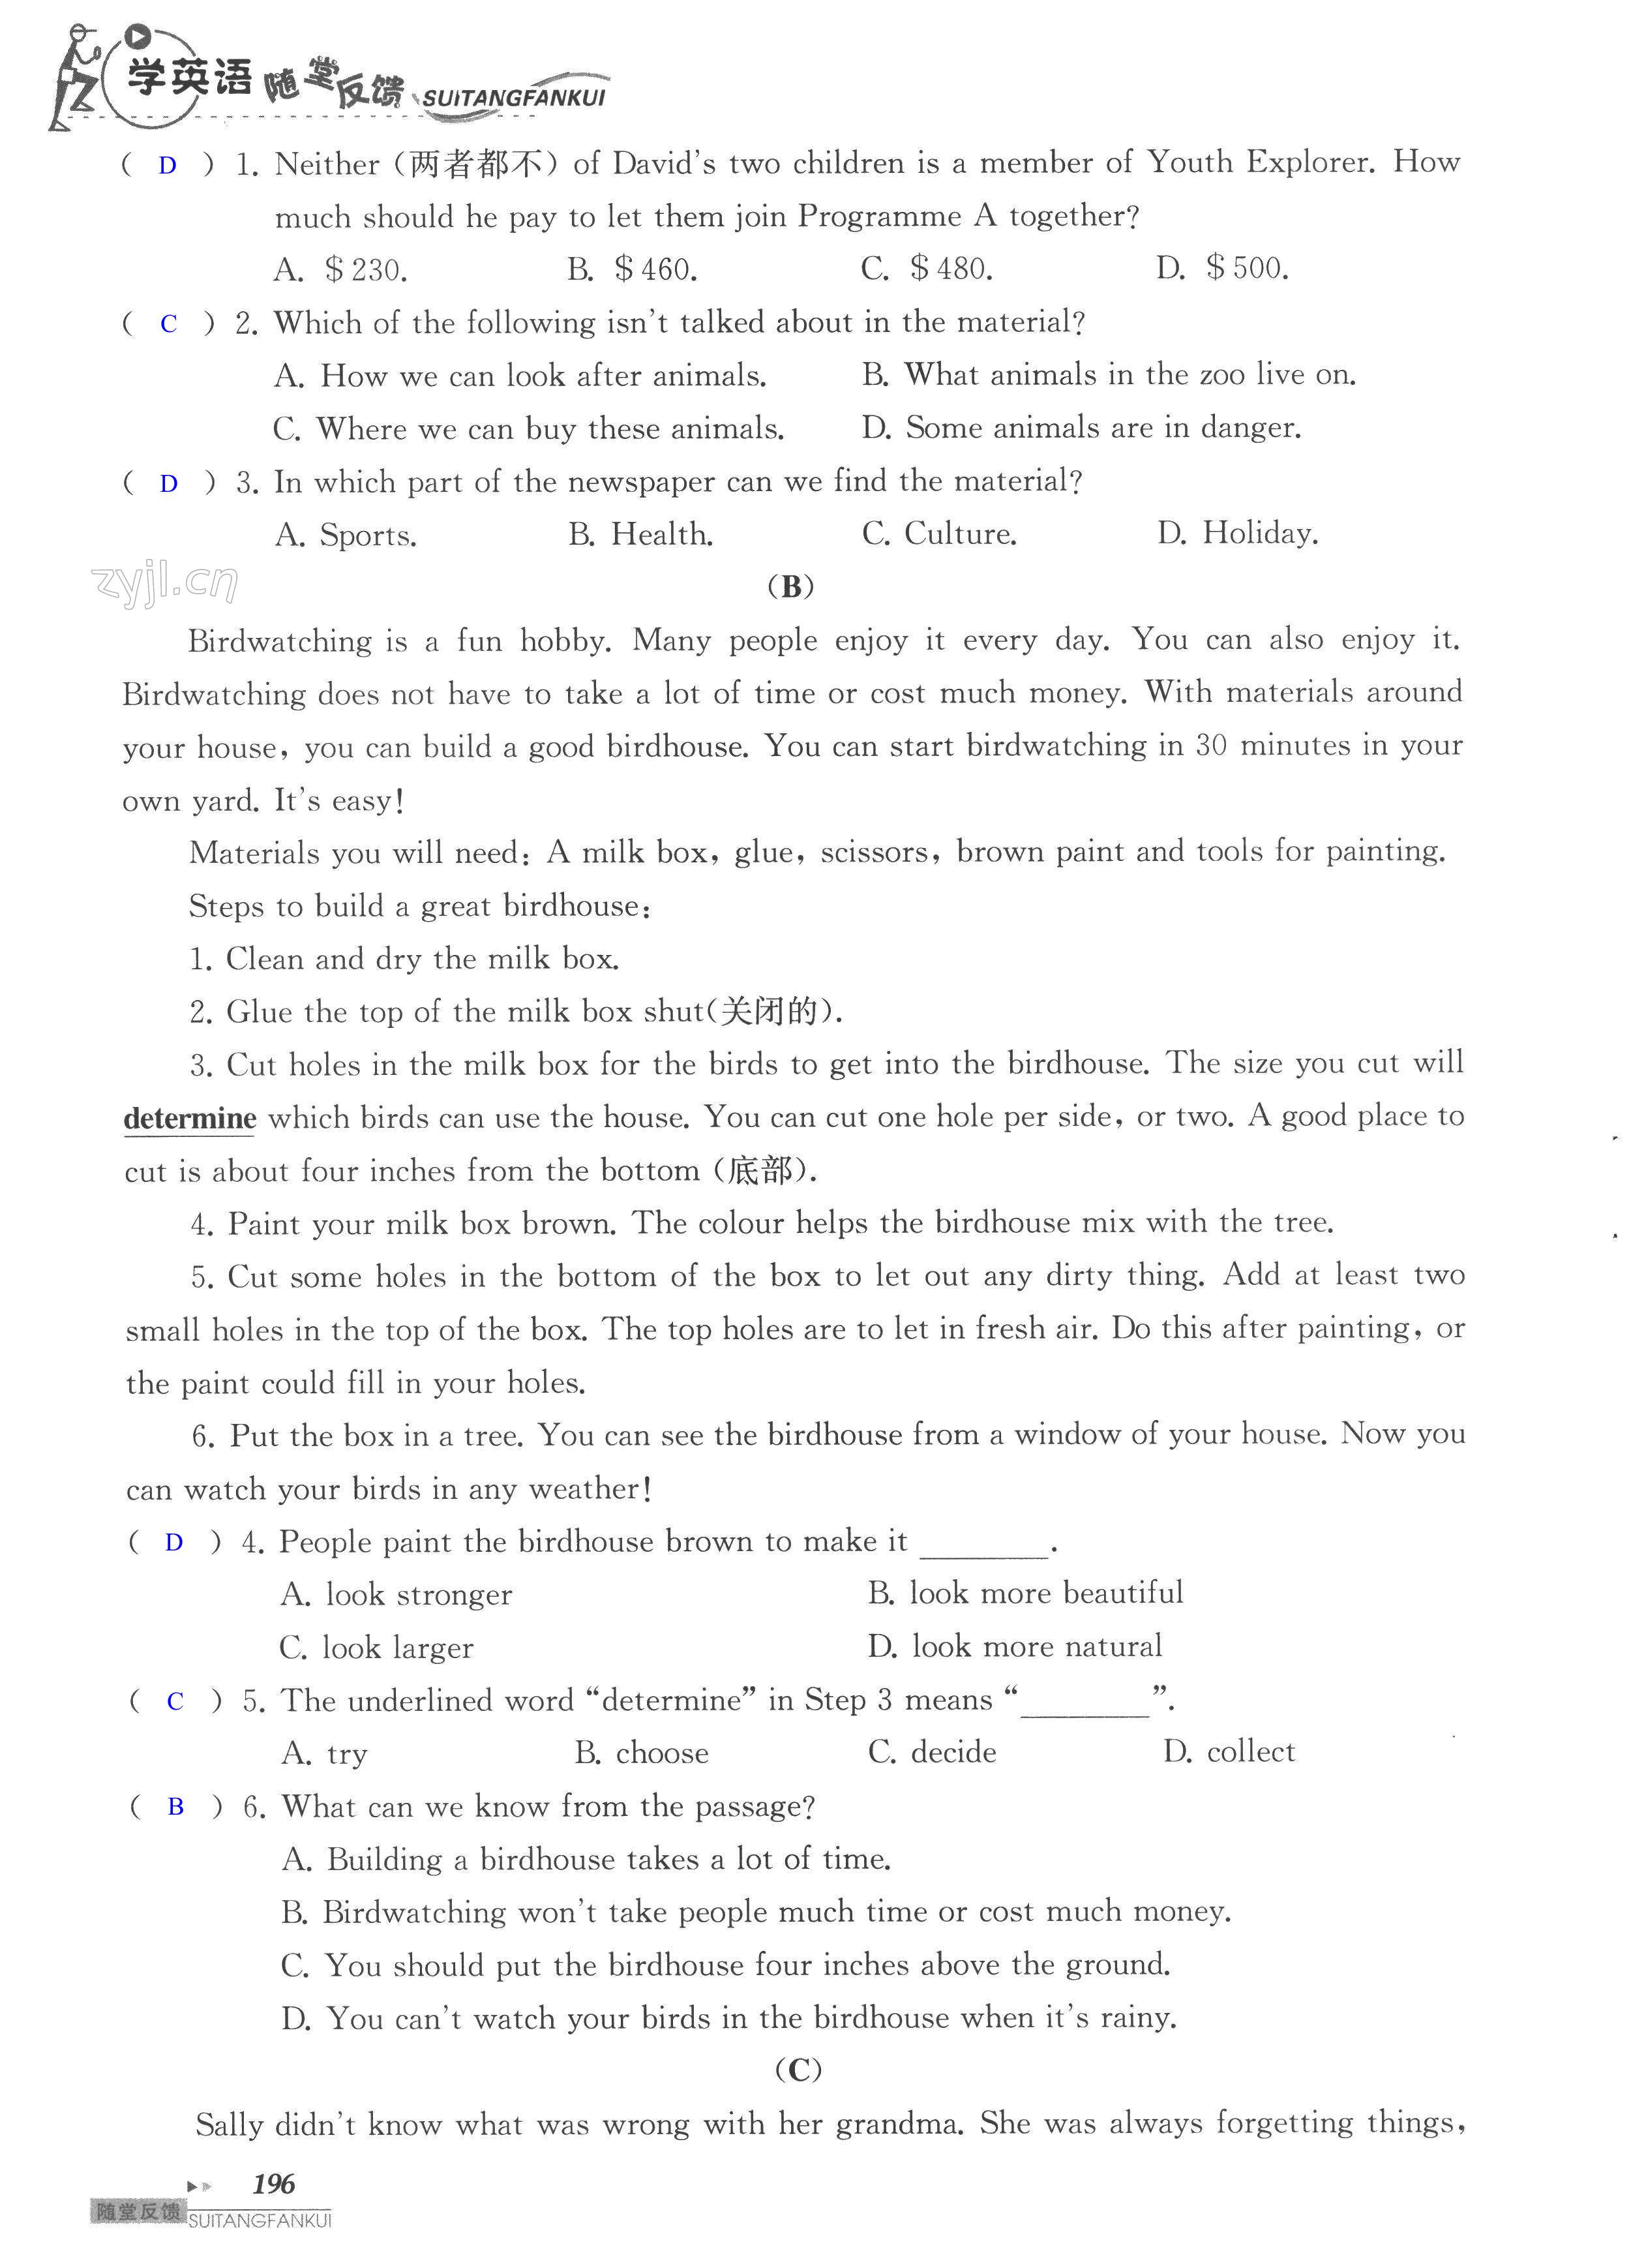 单元综合测试卷 Test for Unit 6 of 8A - 第196页